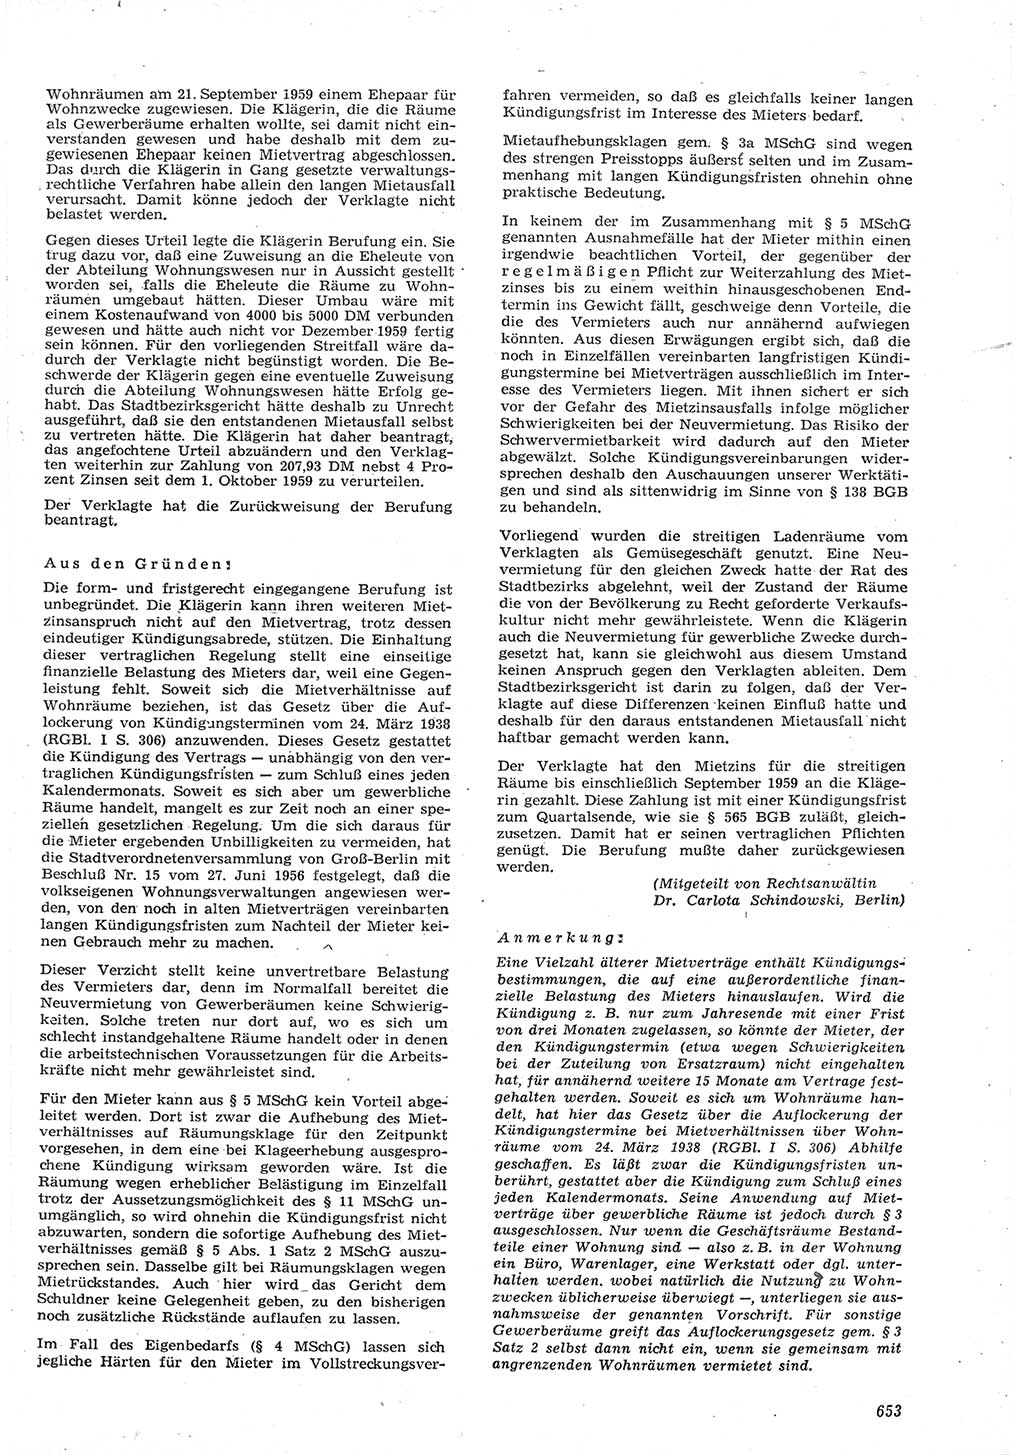 Neue Justiz (NJ), Zeitschrift für Recht und Rechtswissenschaft [Deutsche Demokratische Republik (DDR)], 15. Jahrgang 1961, Seite 653 (NJ DDR 1961, S. 653)